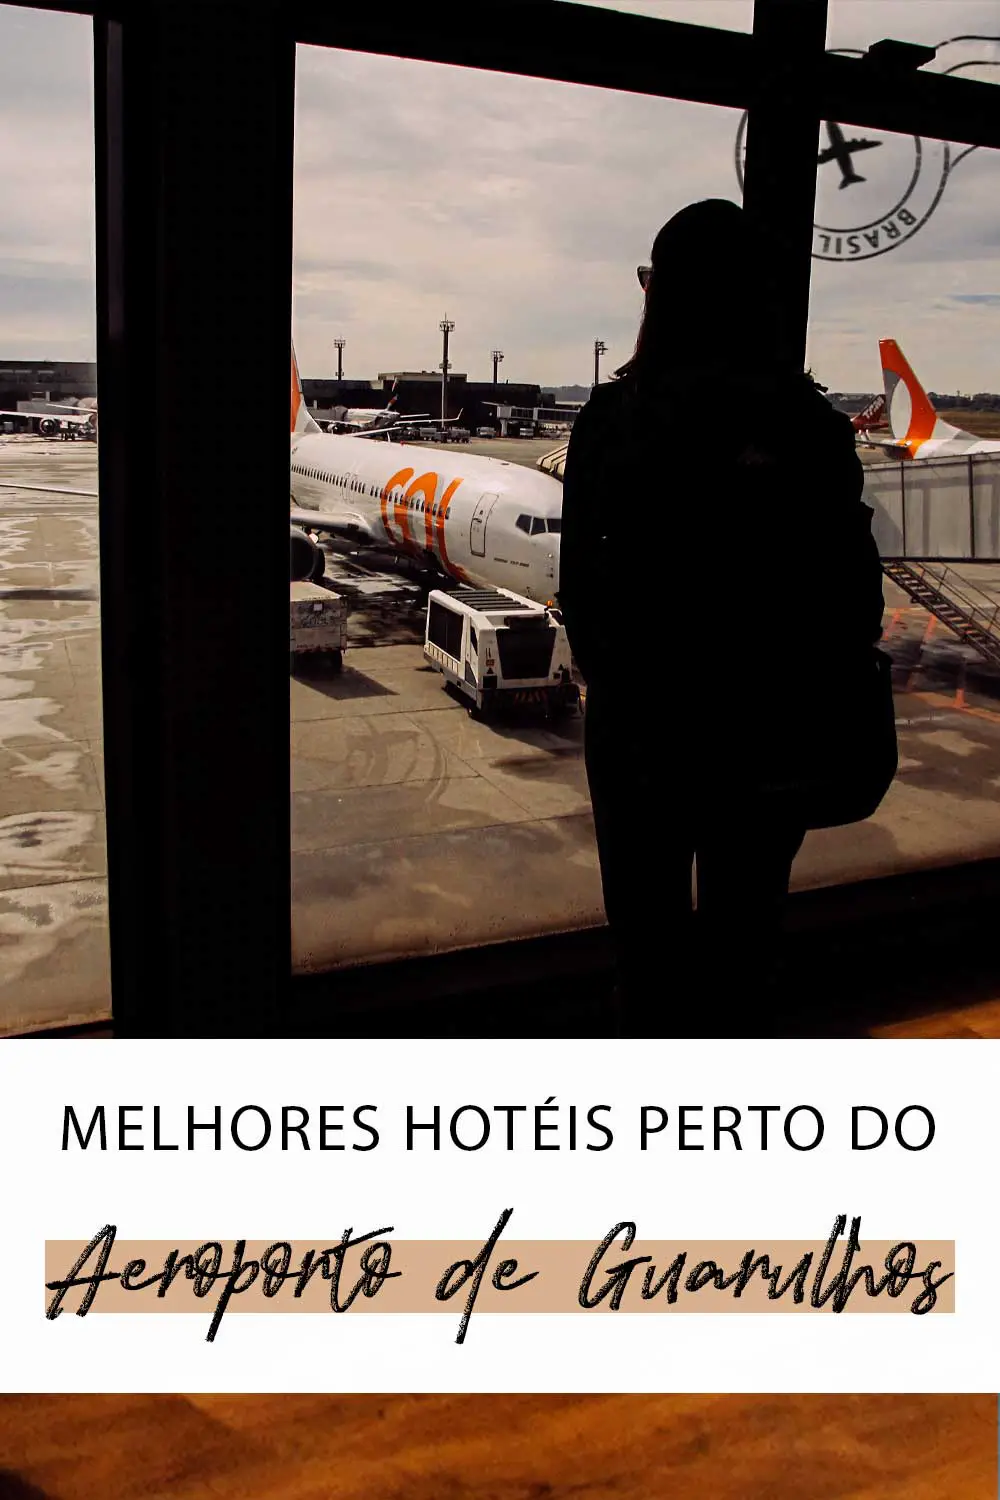 Melhores hotéis perto do Aeroporto de Guarulhos